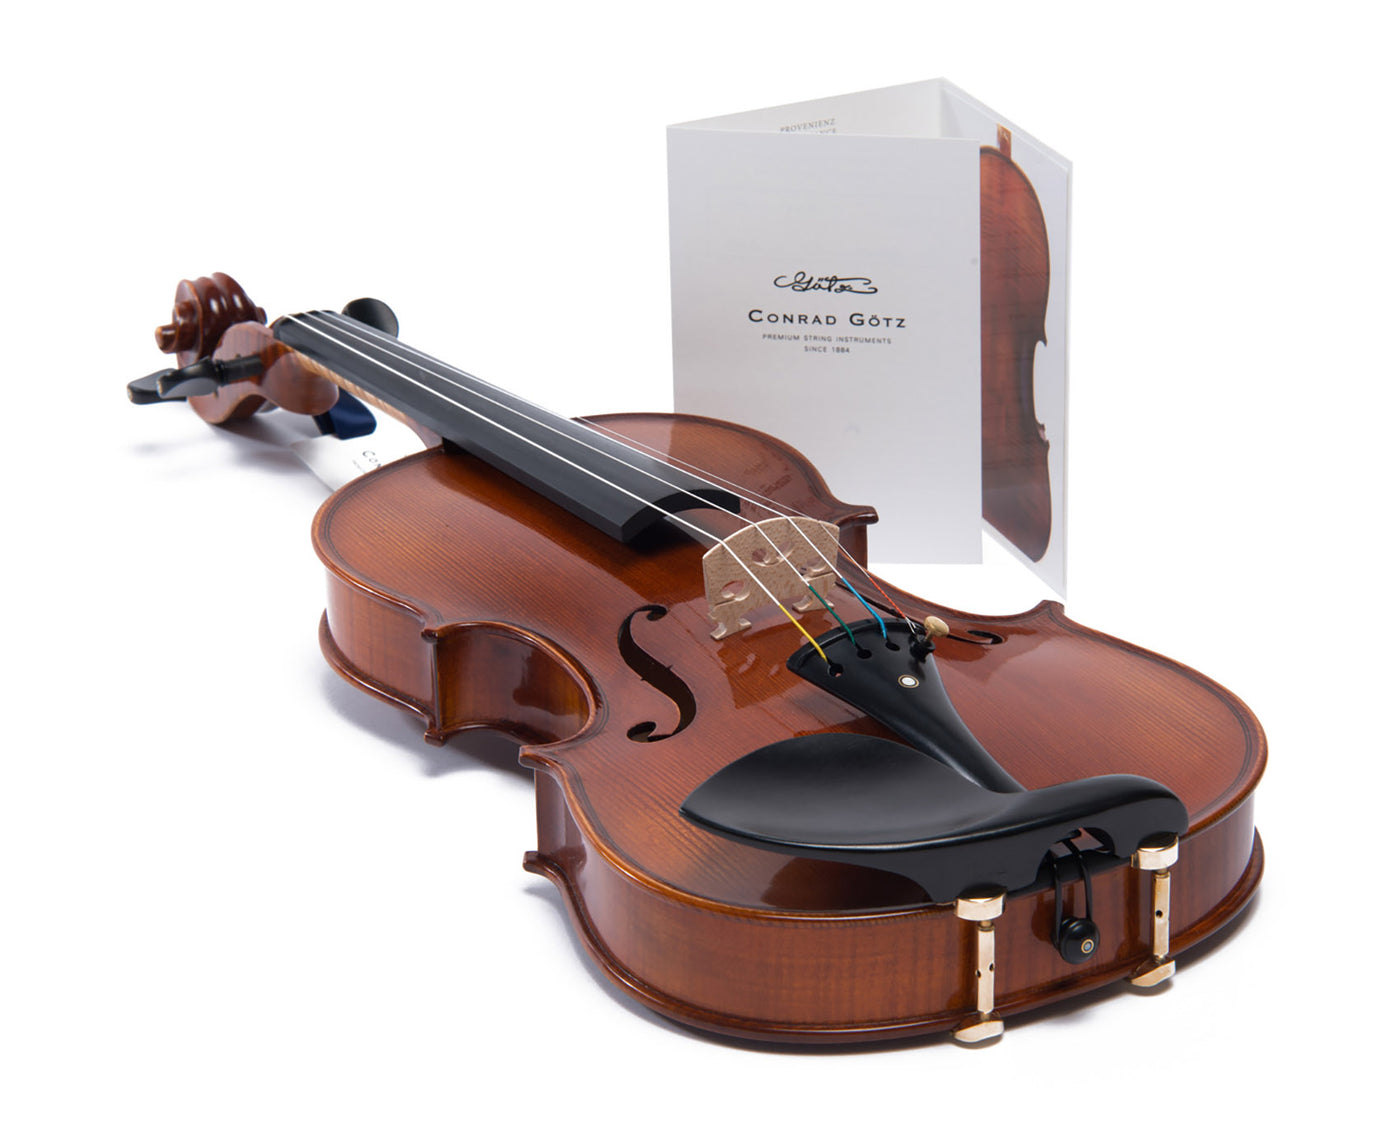 METROPOL Violine #108 MET